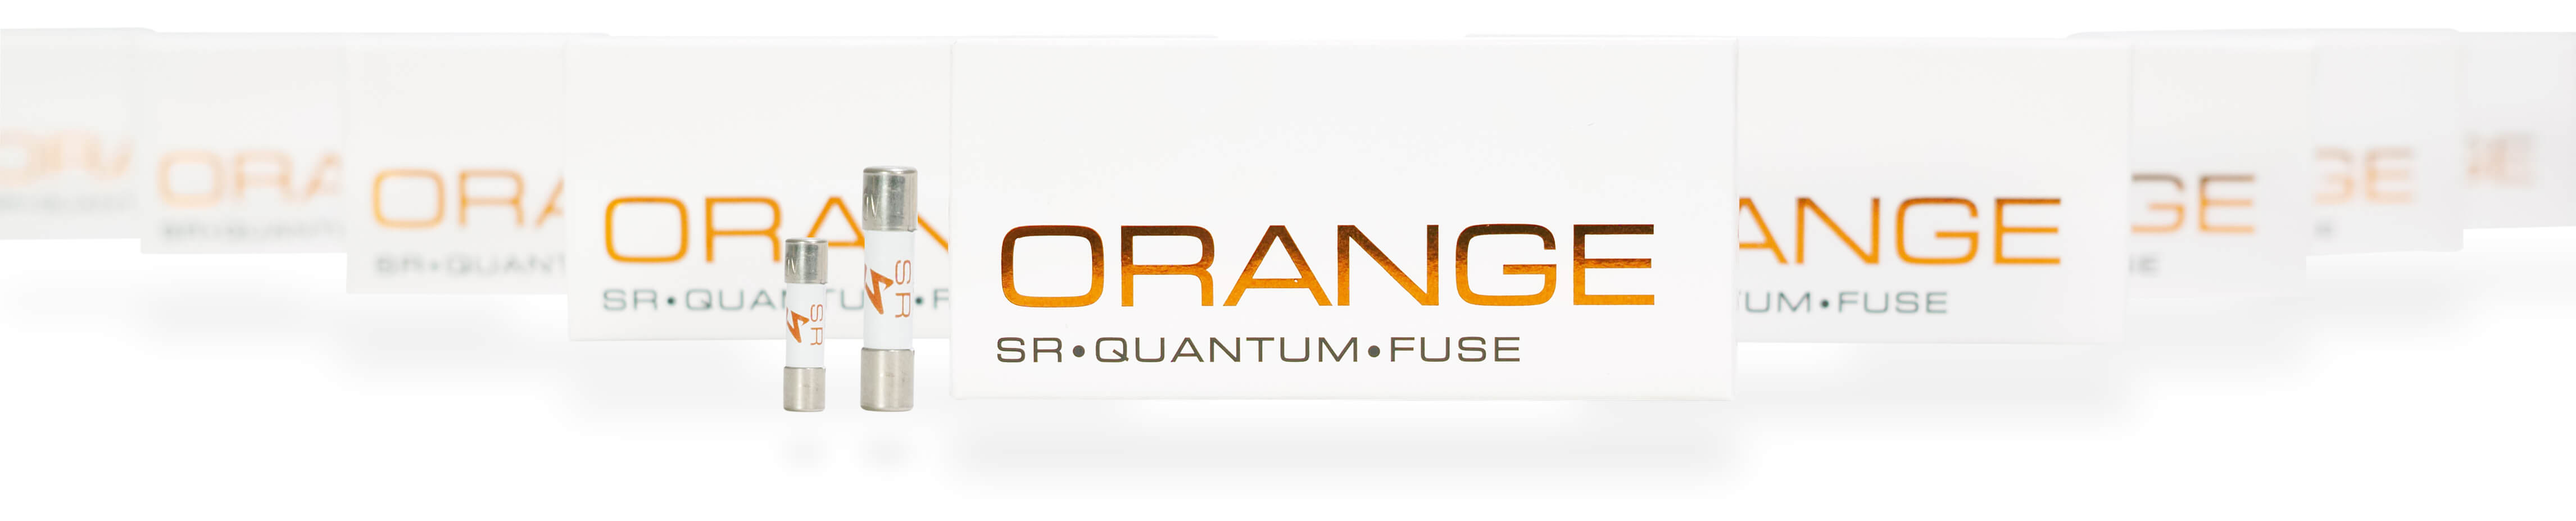 Cầu chì Synergistic Research Orange Quantum Fuses giá tốt tại Audio ...